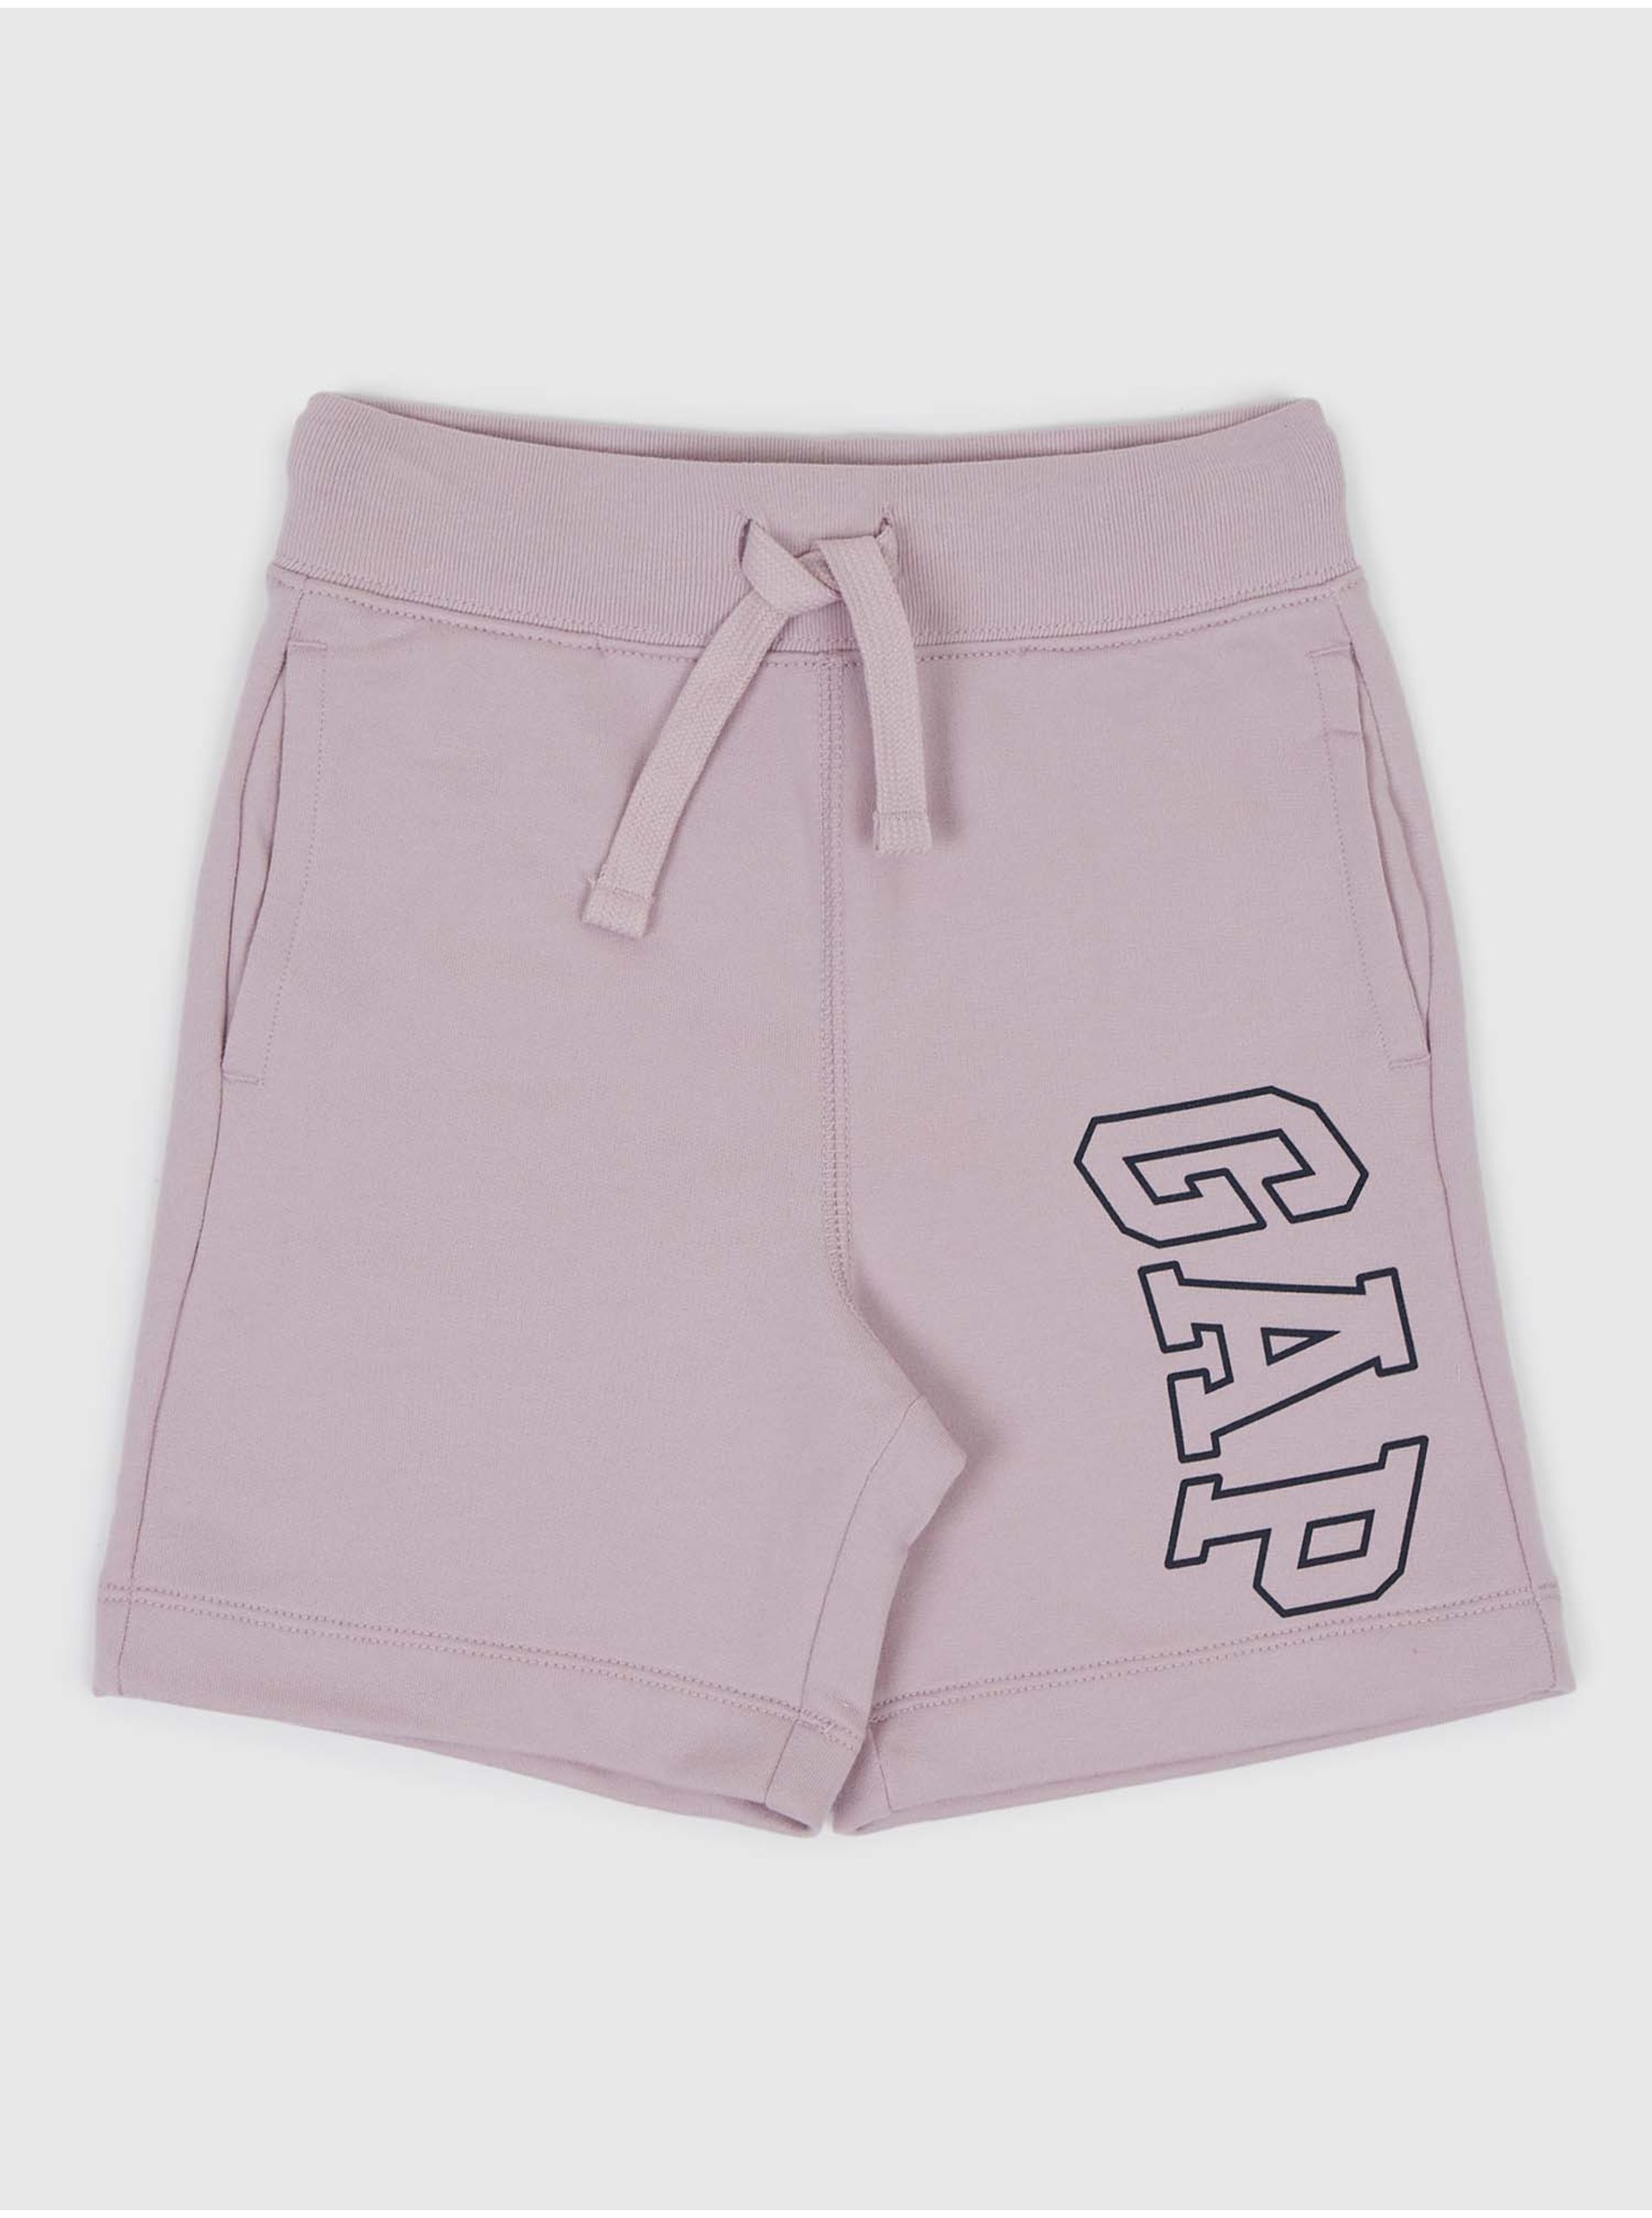 Lacno Fialové chlapčenské šortky s logom GAP